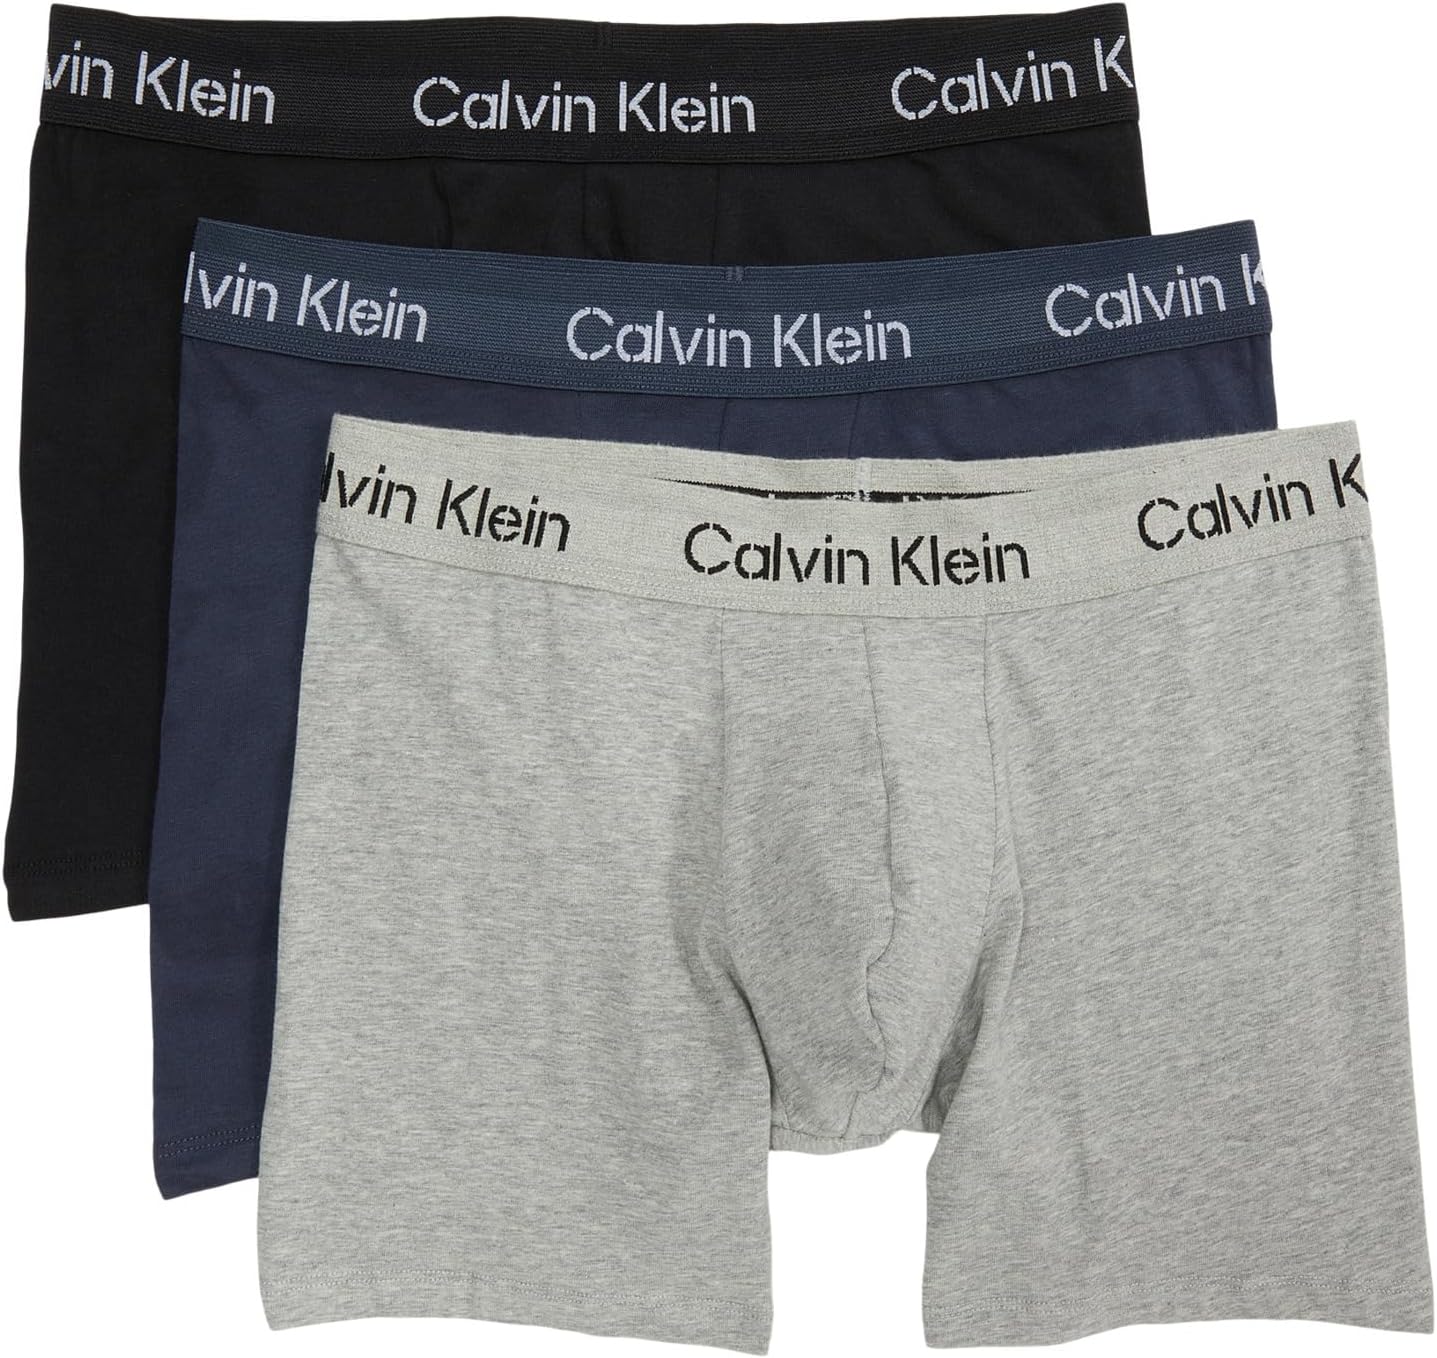 Комплект боксеров-боксеров из хлопка стрейч цвета хаки, 3 шт. Calvin Klein Underwear, цвет Black/Speakeasy/Grey Heather